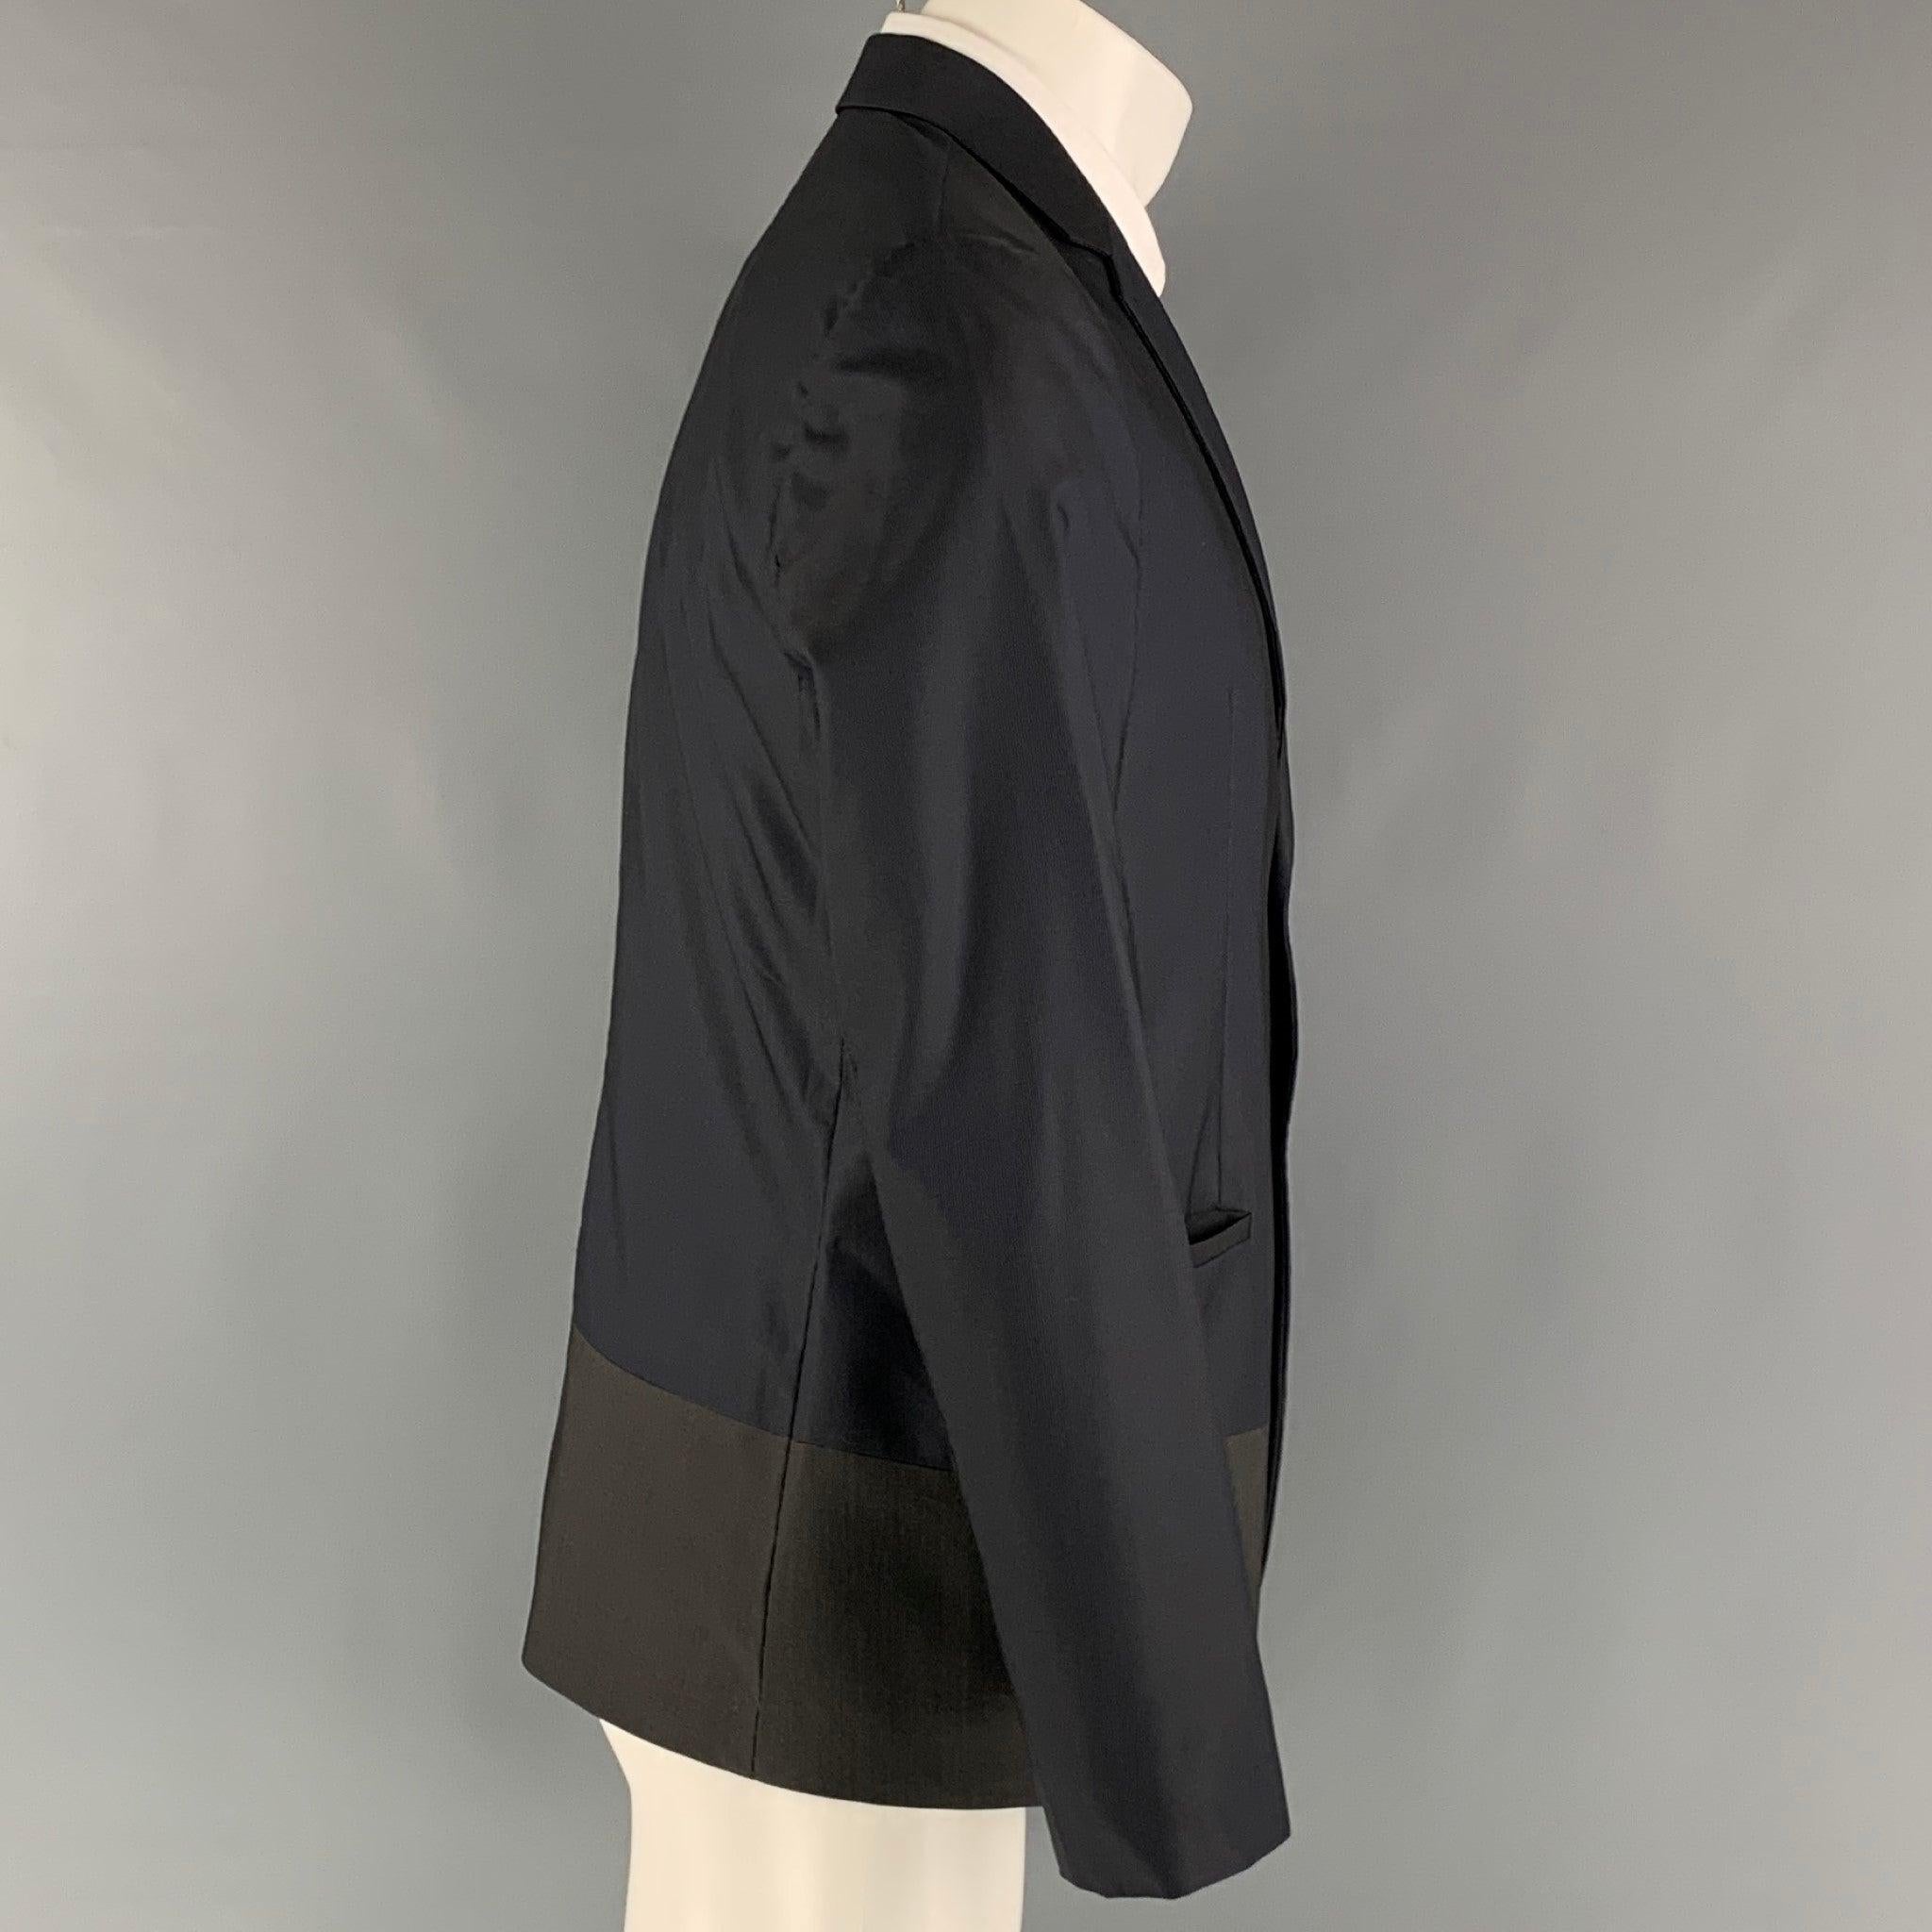 Le manteau sport EMPORIO ARMANI est réalisé dans une matière tissée marine et olive avec une doublure intégrale. Il présente une esthétique color block, un revers à cran, des poches passepoilées et une fermeture à deux boutons. Fabriqué en Italie.